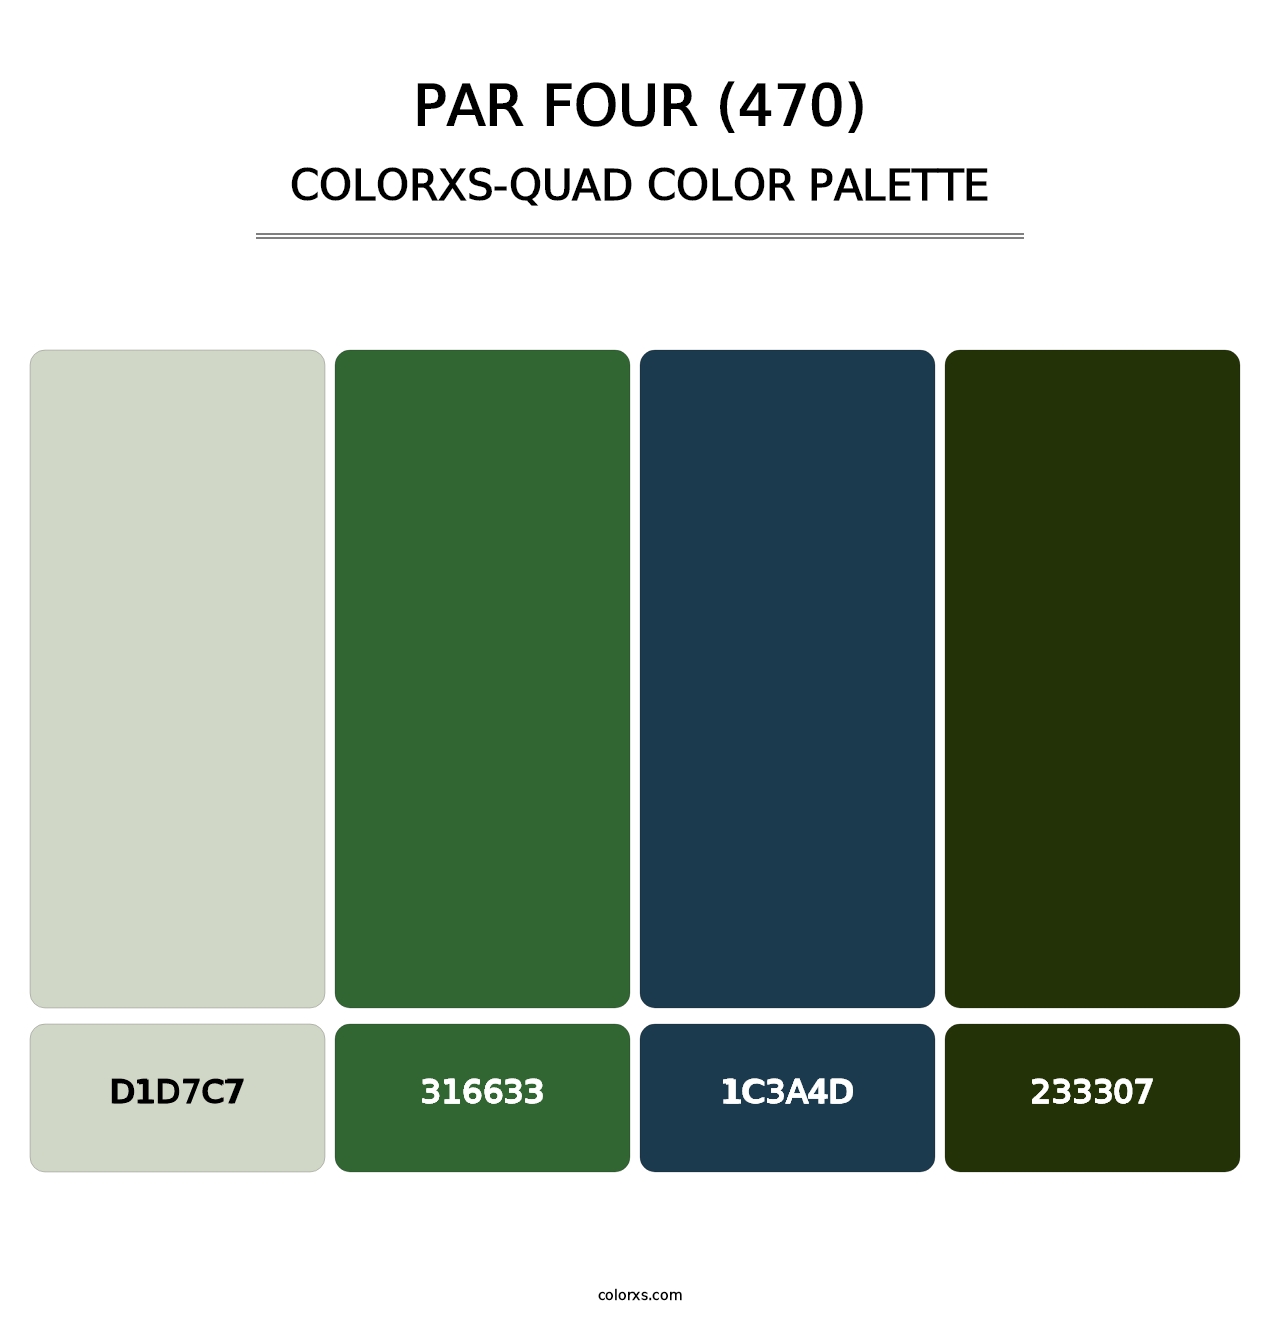 Par Four (470) - Colorxs Quad Palette